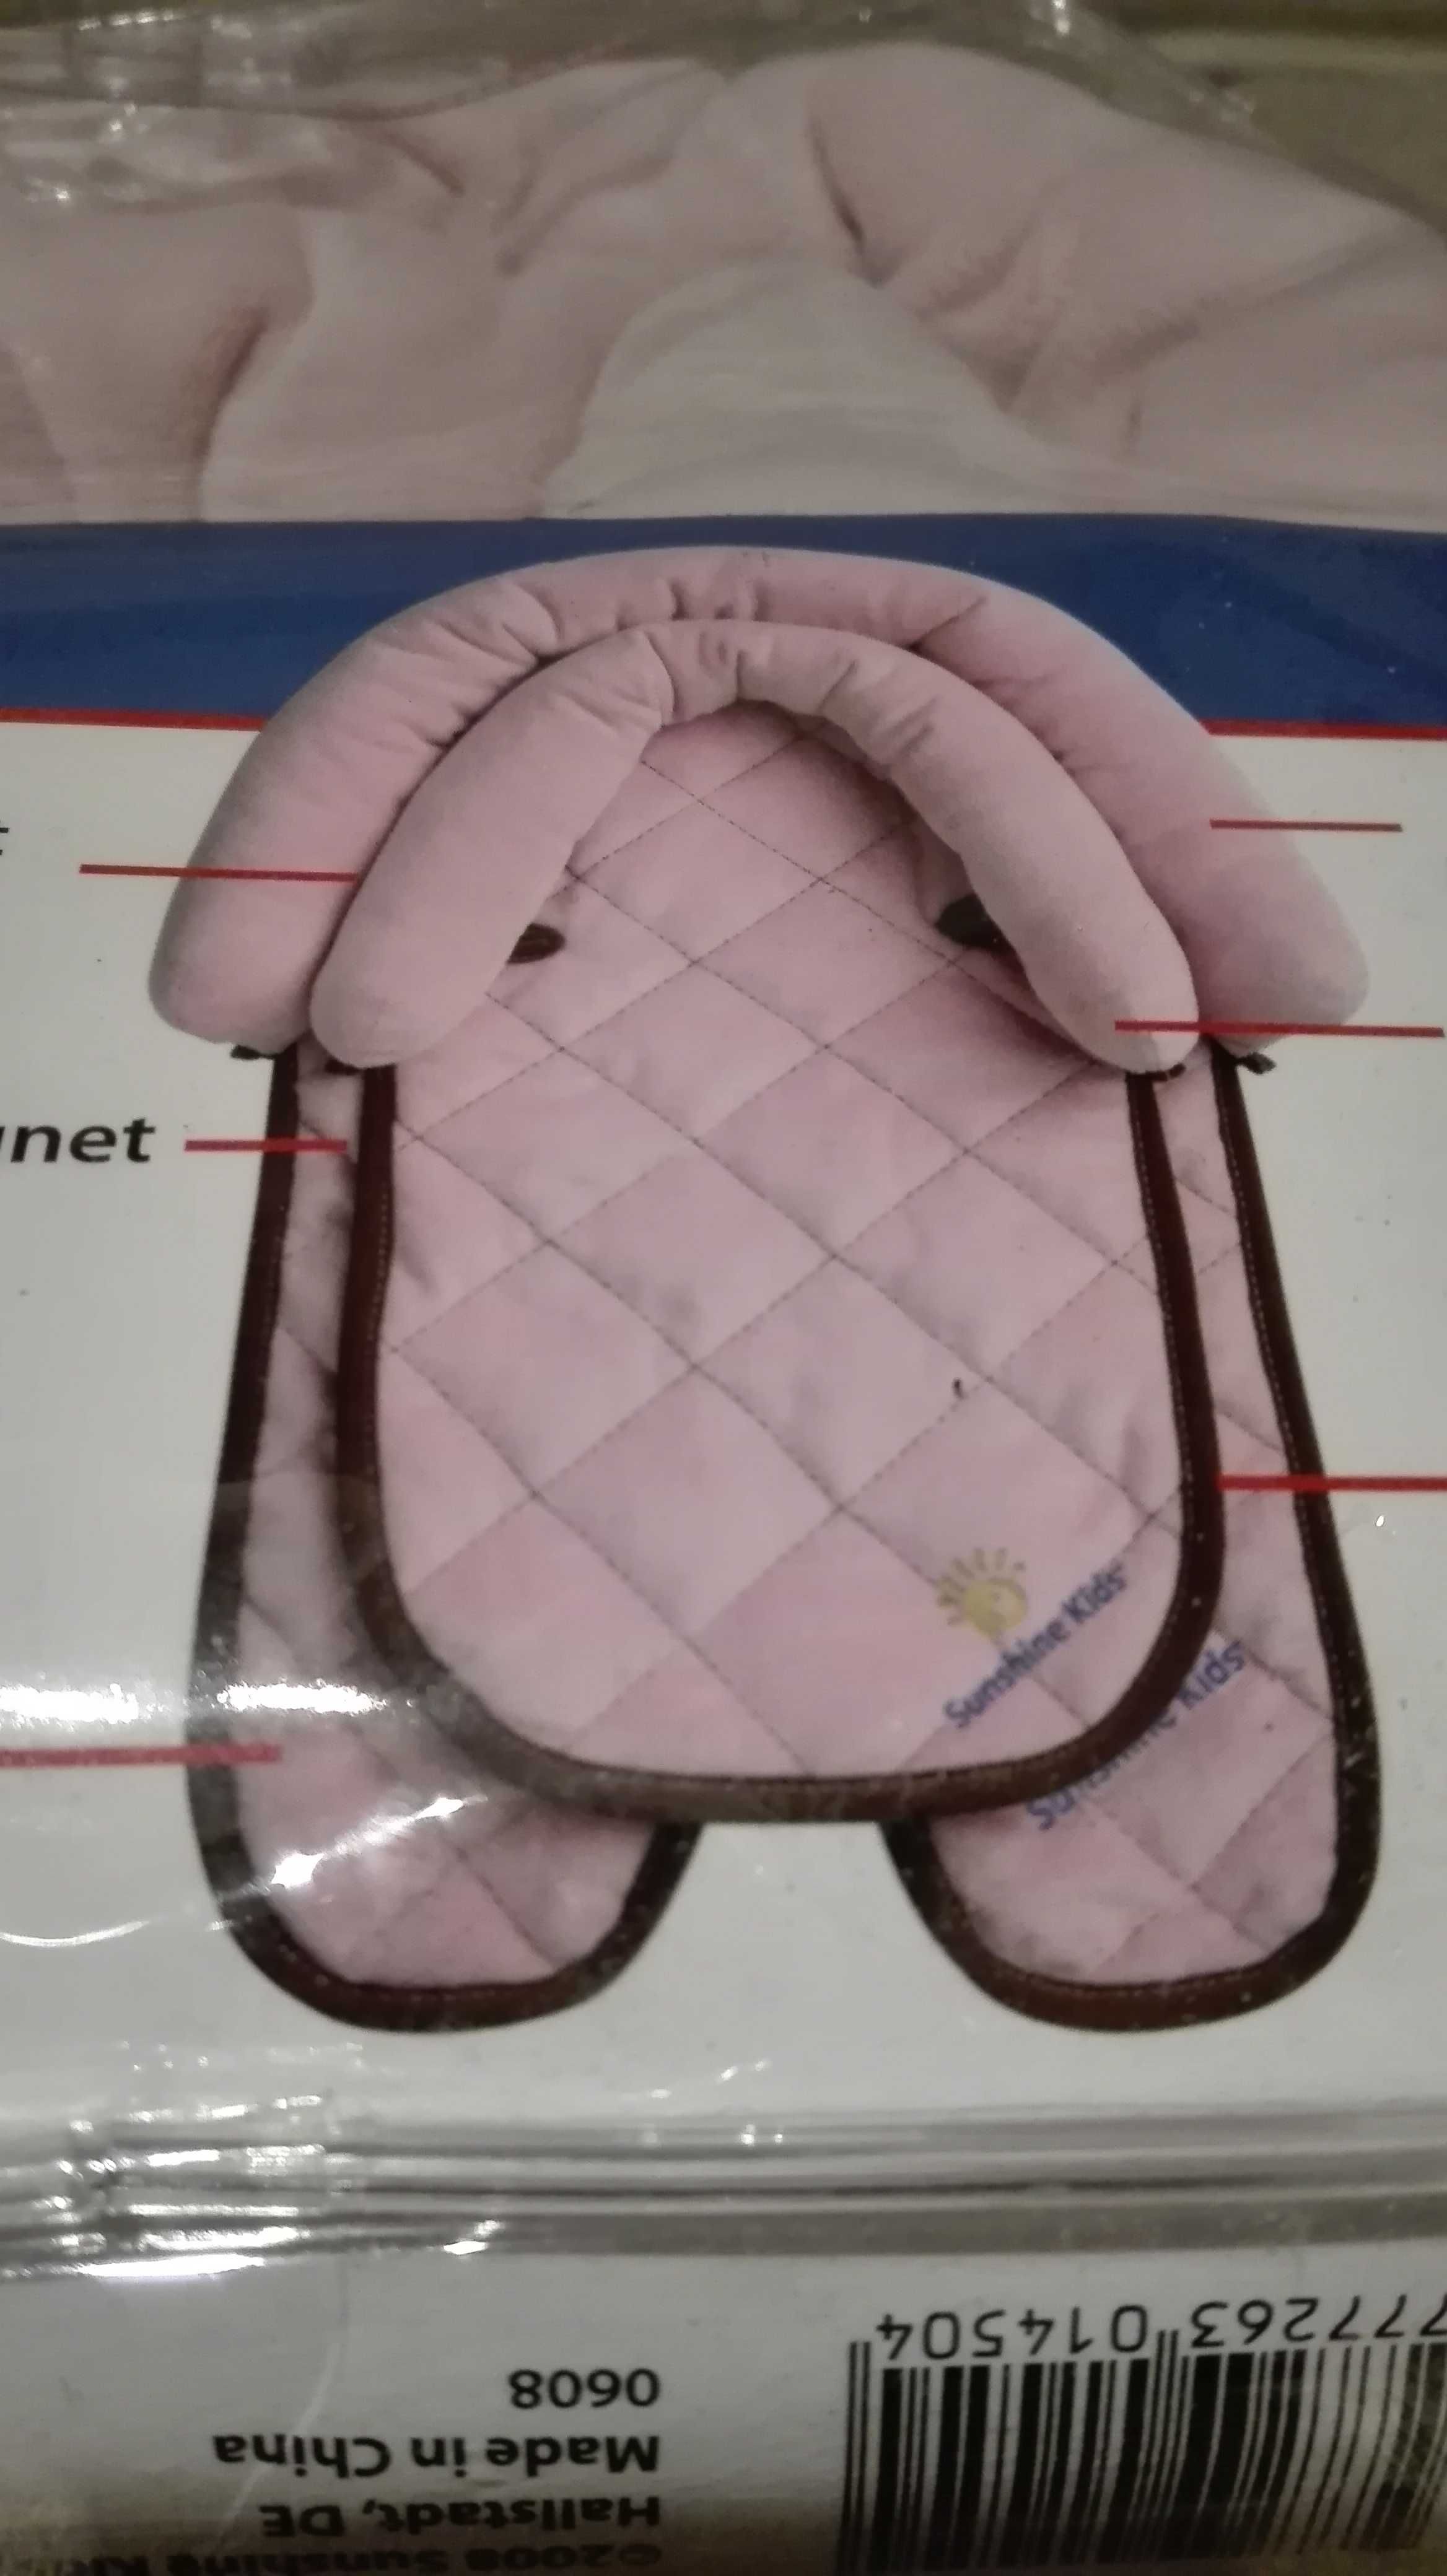 Poduszka/podkładka pod głowę dla dzieci do fotelika/ łóżeczka/ wózka